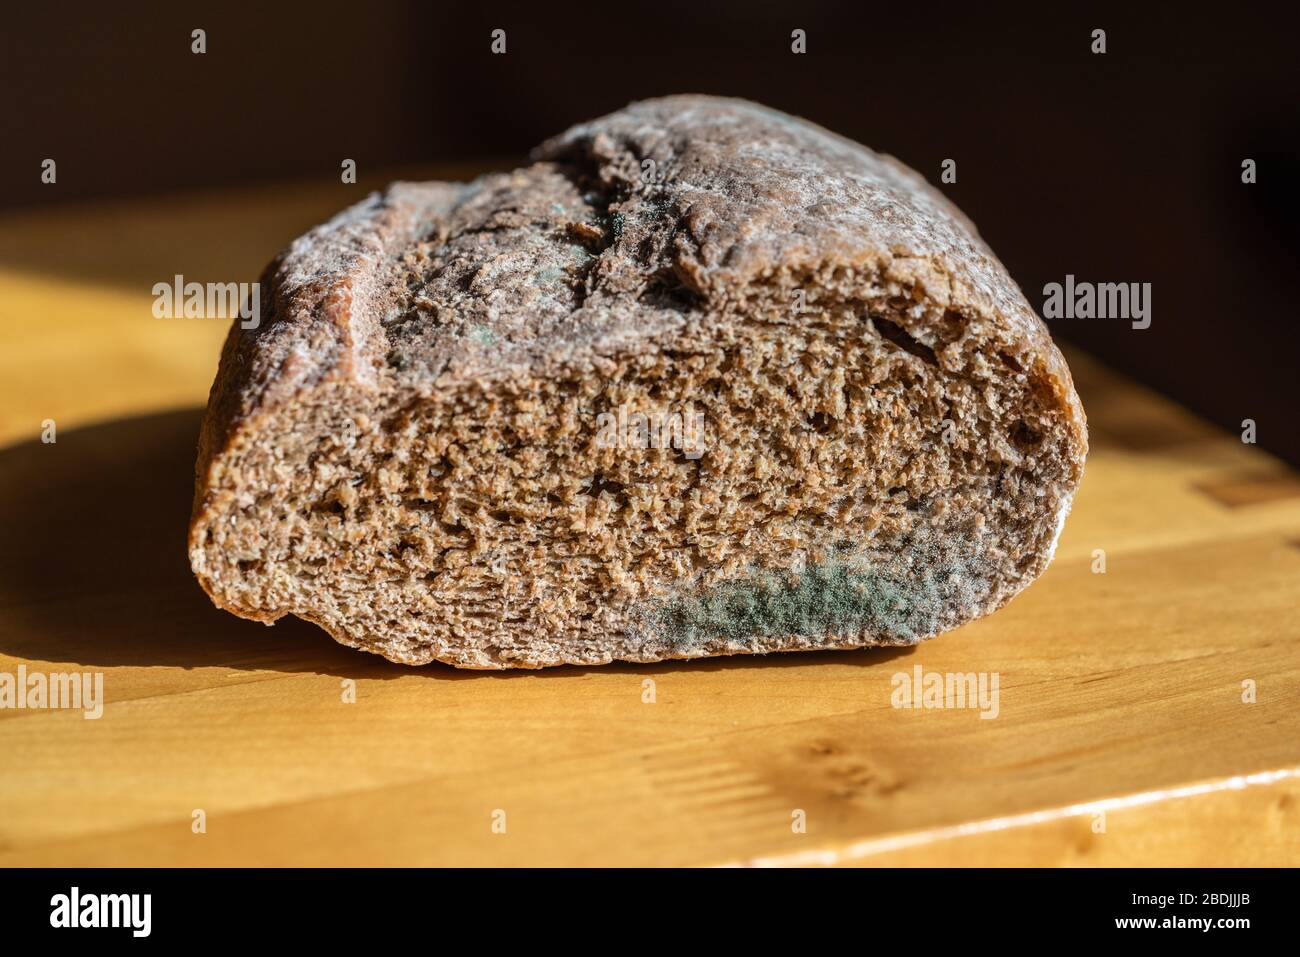 Penicillium sp. mould on bread Stock Photo